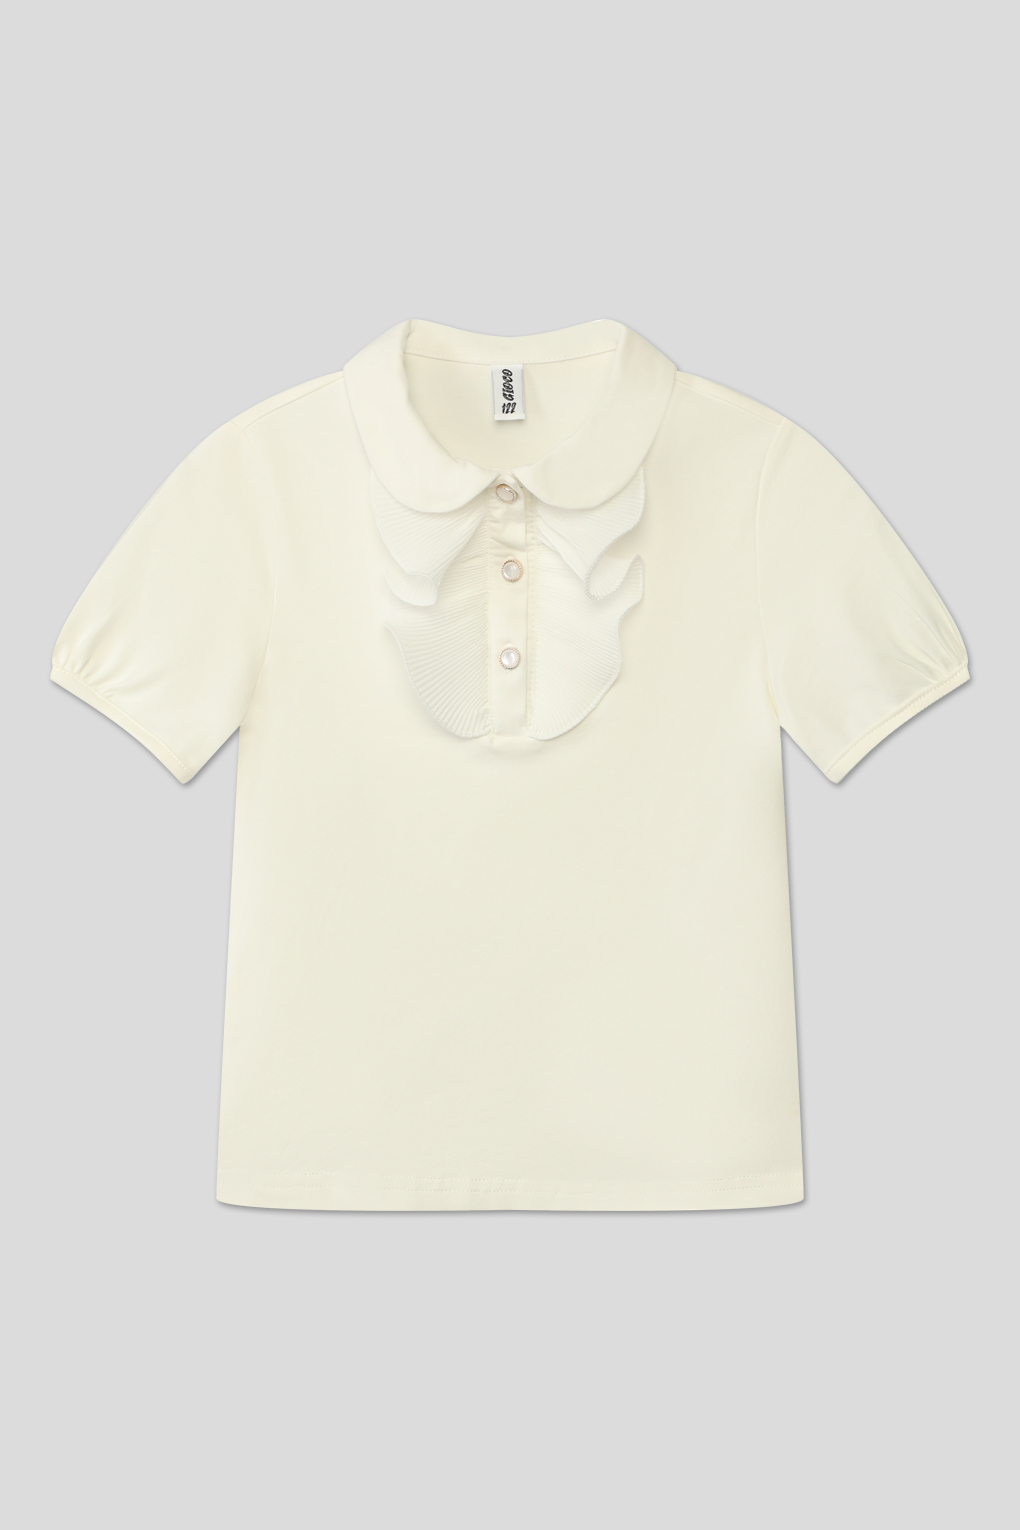 блуза трикотажная GIOCO G23063485-025 молочный для девочек, цвет Молочный р.158